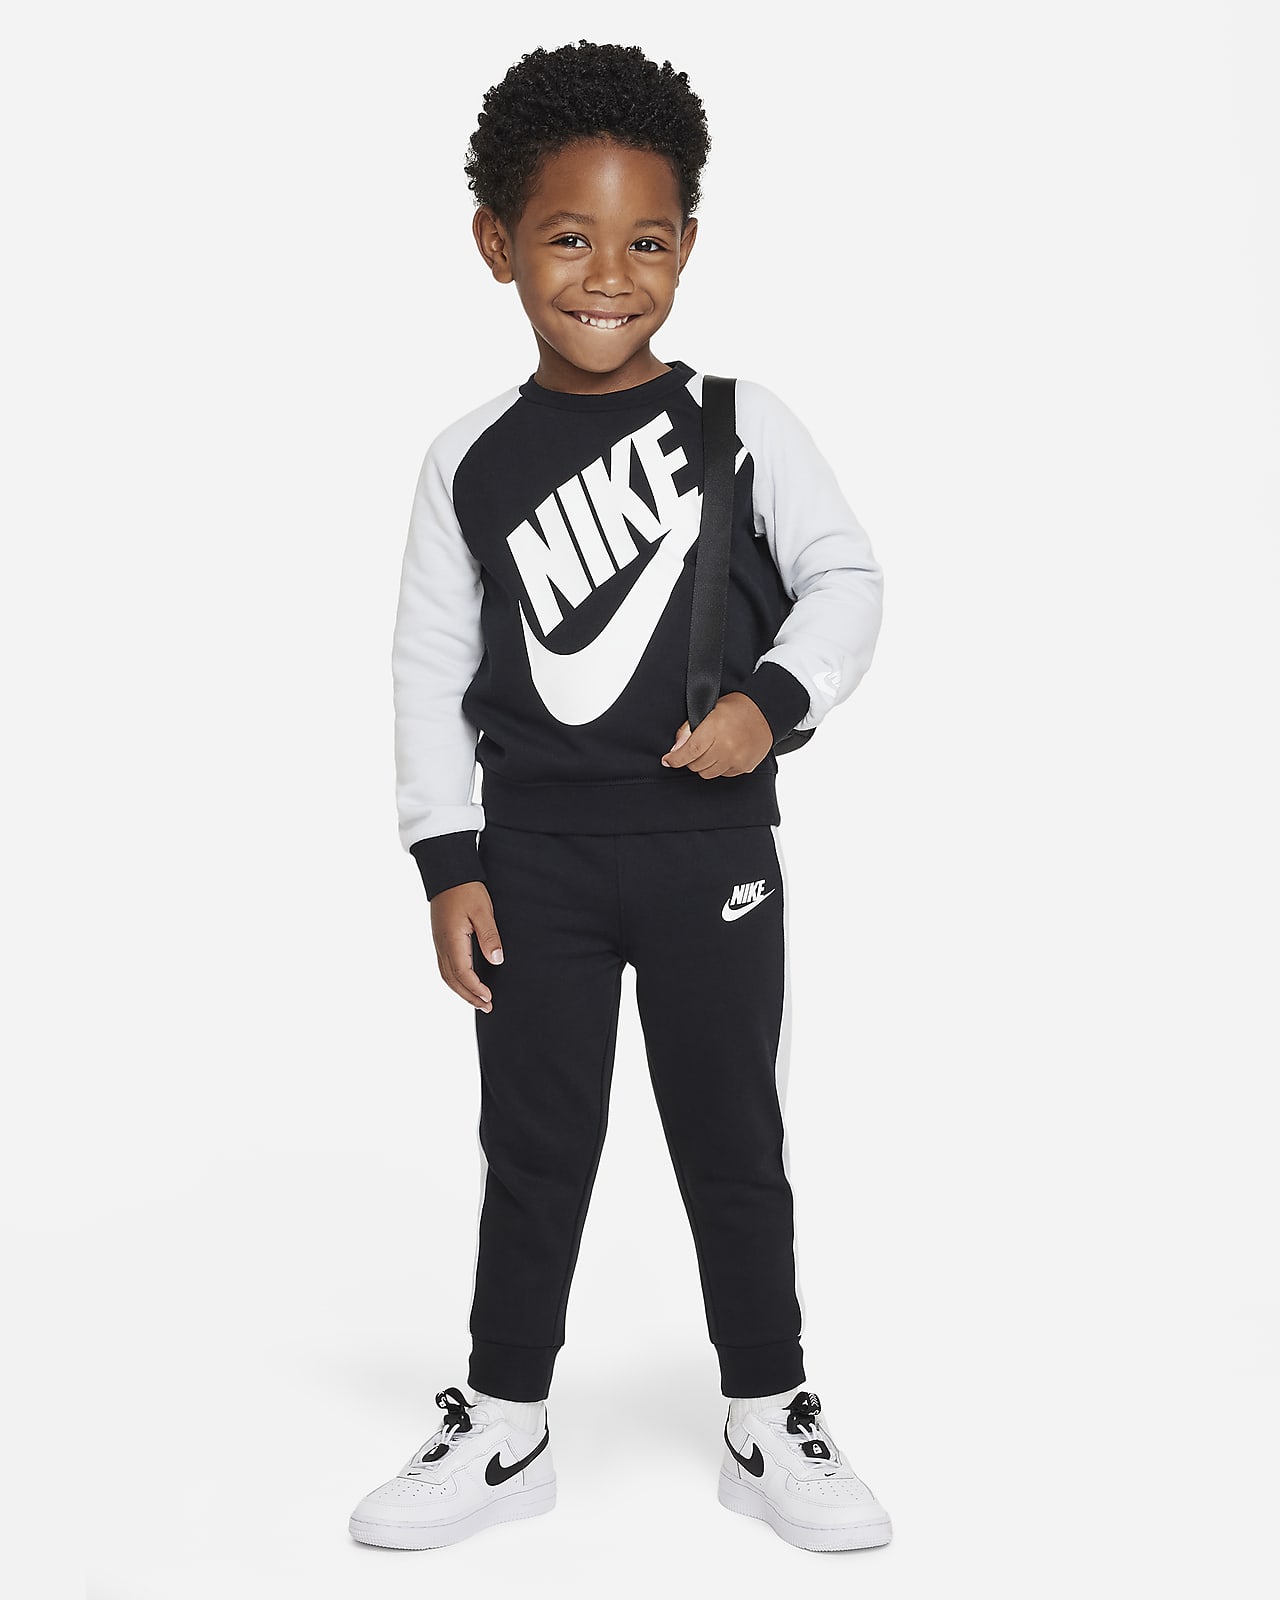 Nike Set aus Rundhalsshirt und Hose für Kleinkinder